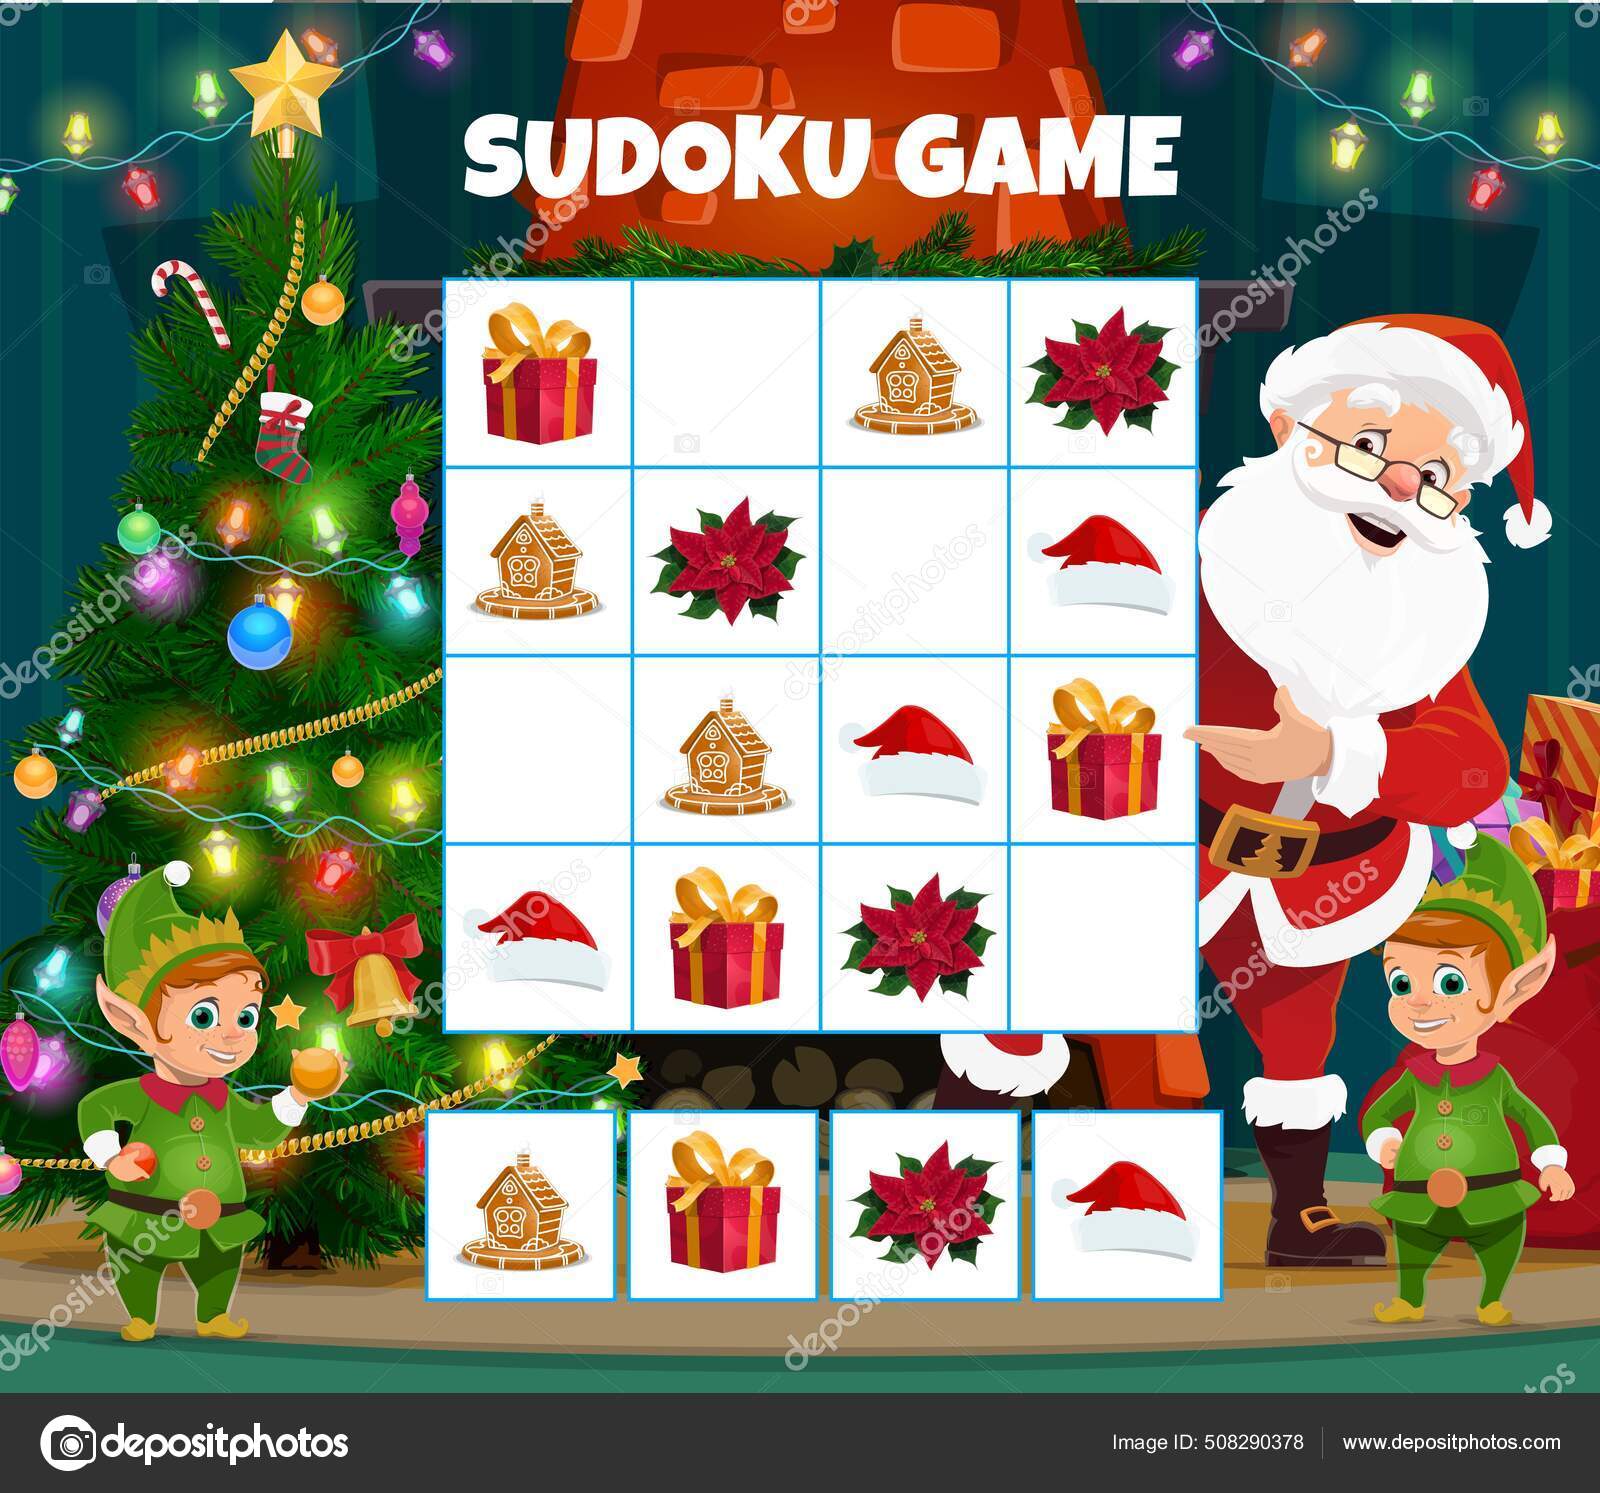 Jogo infantil sudoku, doces de desenho animado, personagens de